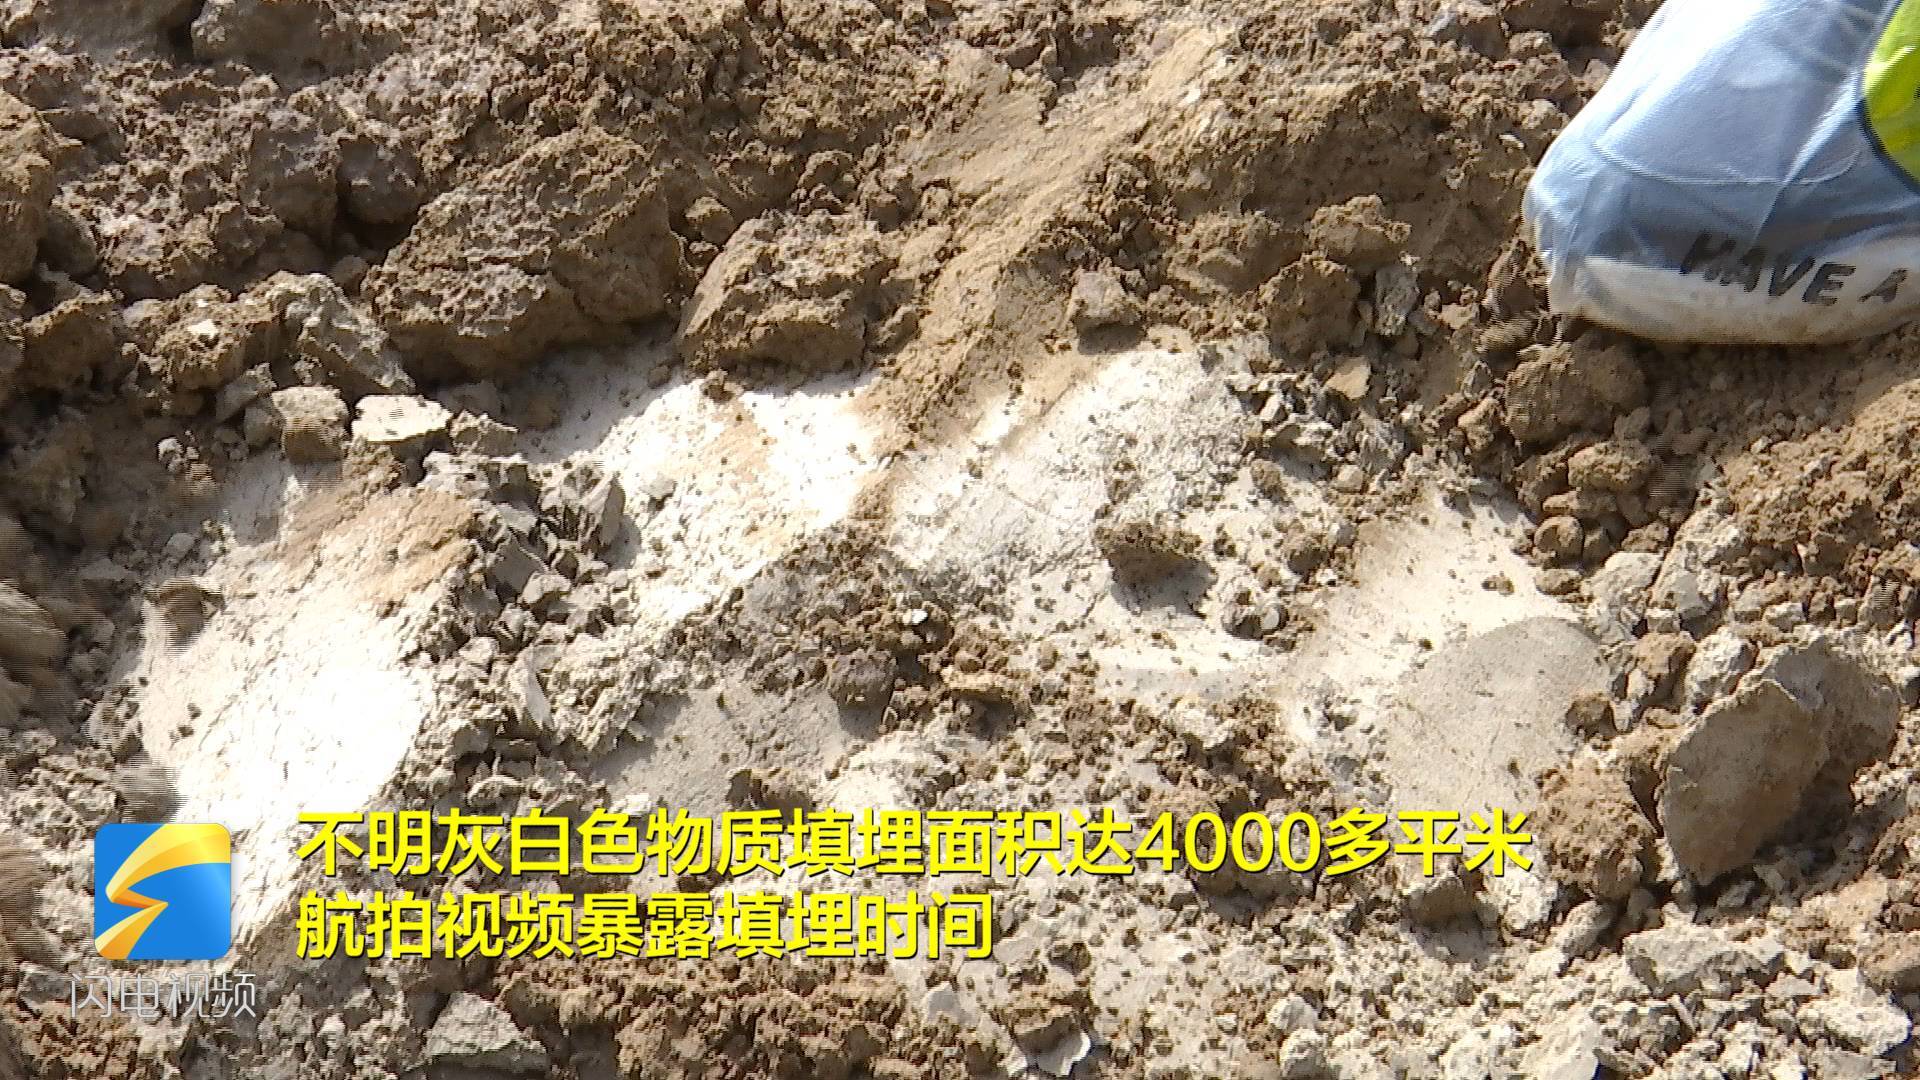 无处安放的固废｜滨州村民反映不明灰白色物质被填埋在村里 记者实地调查